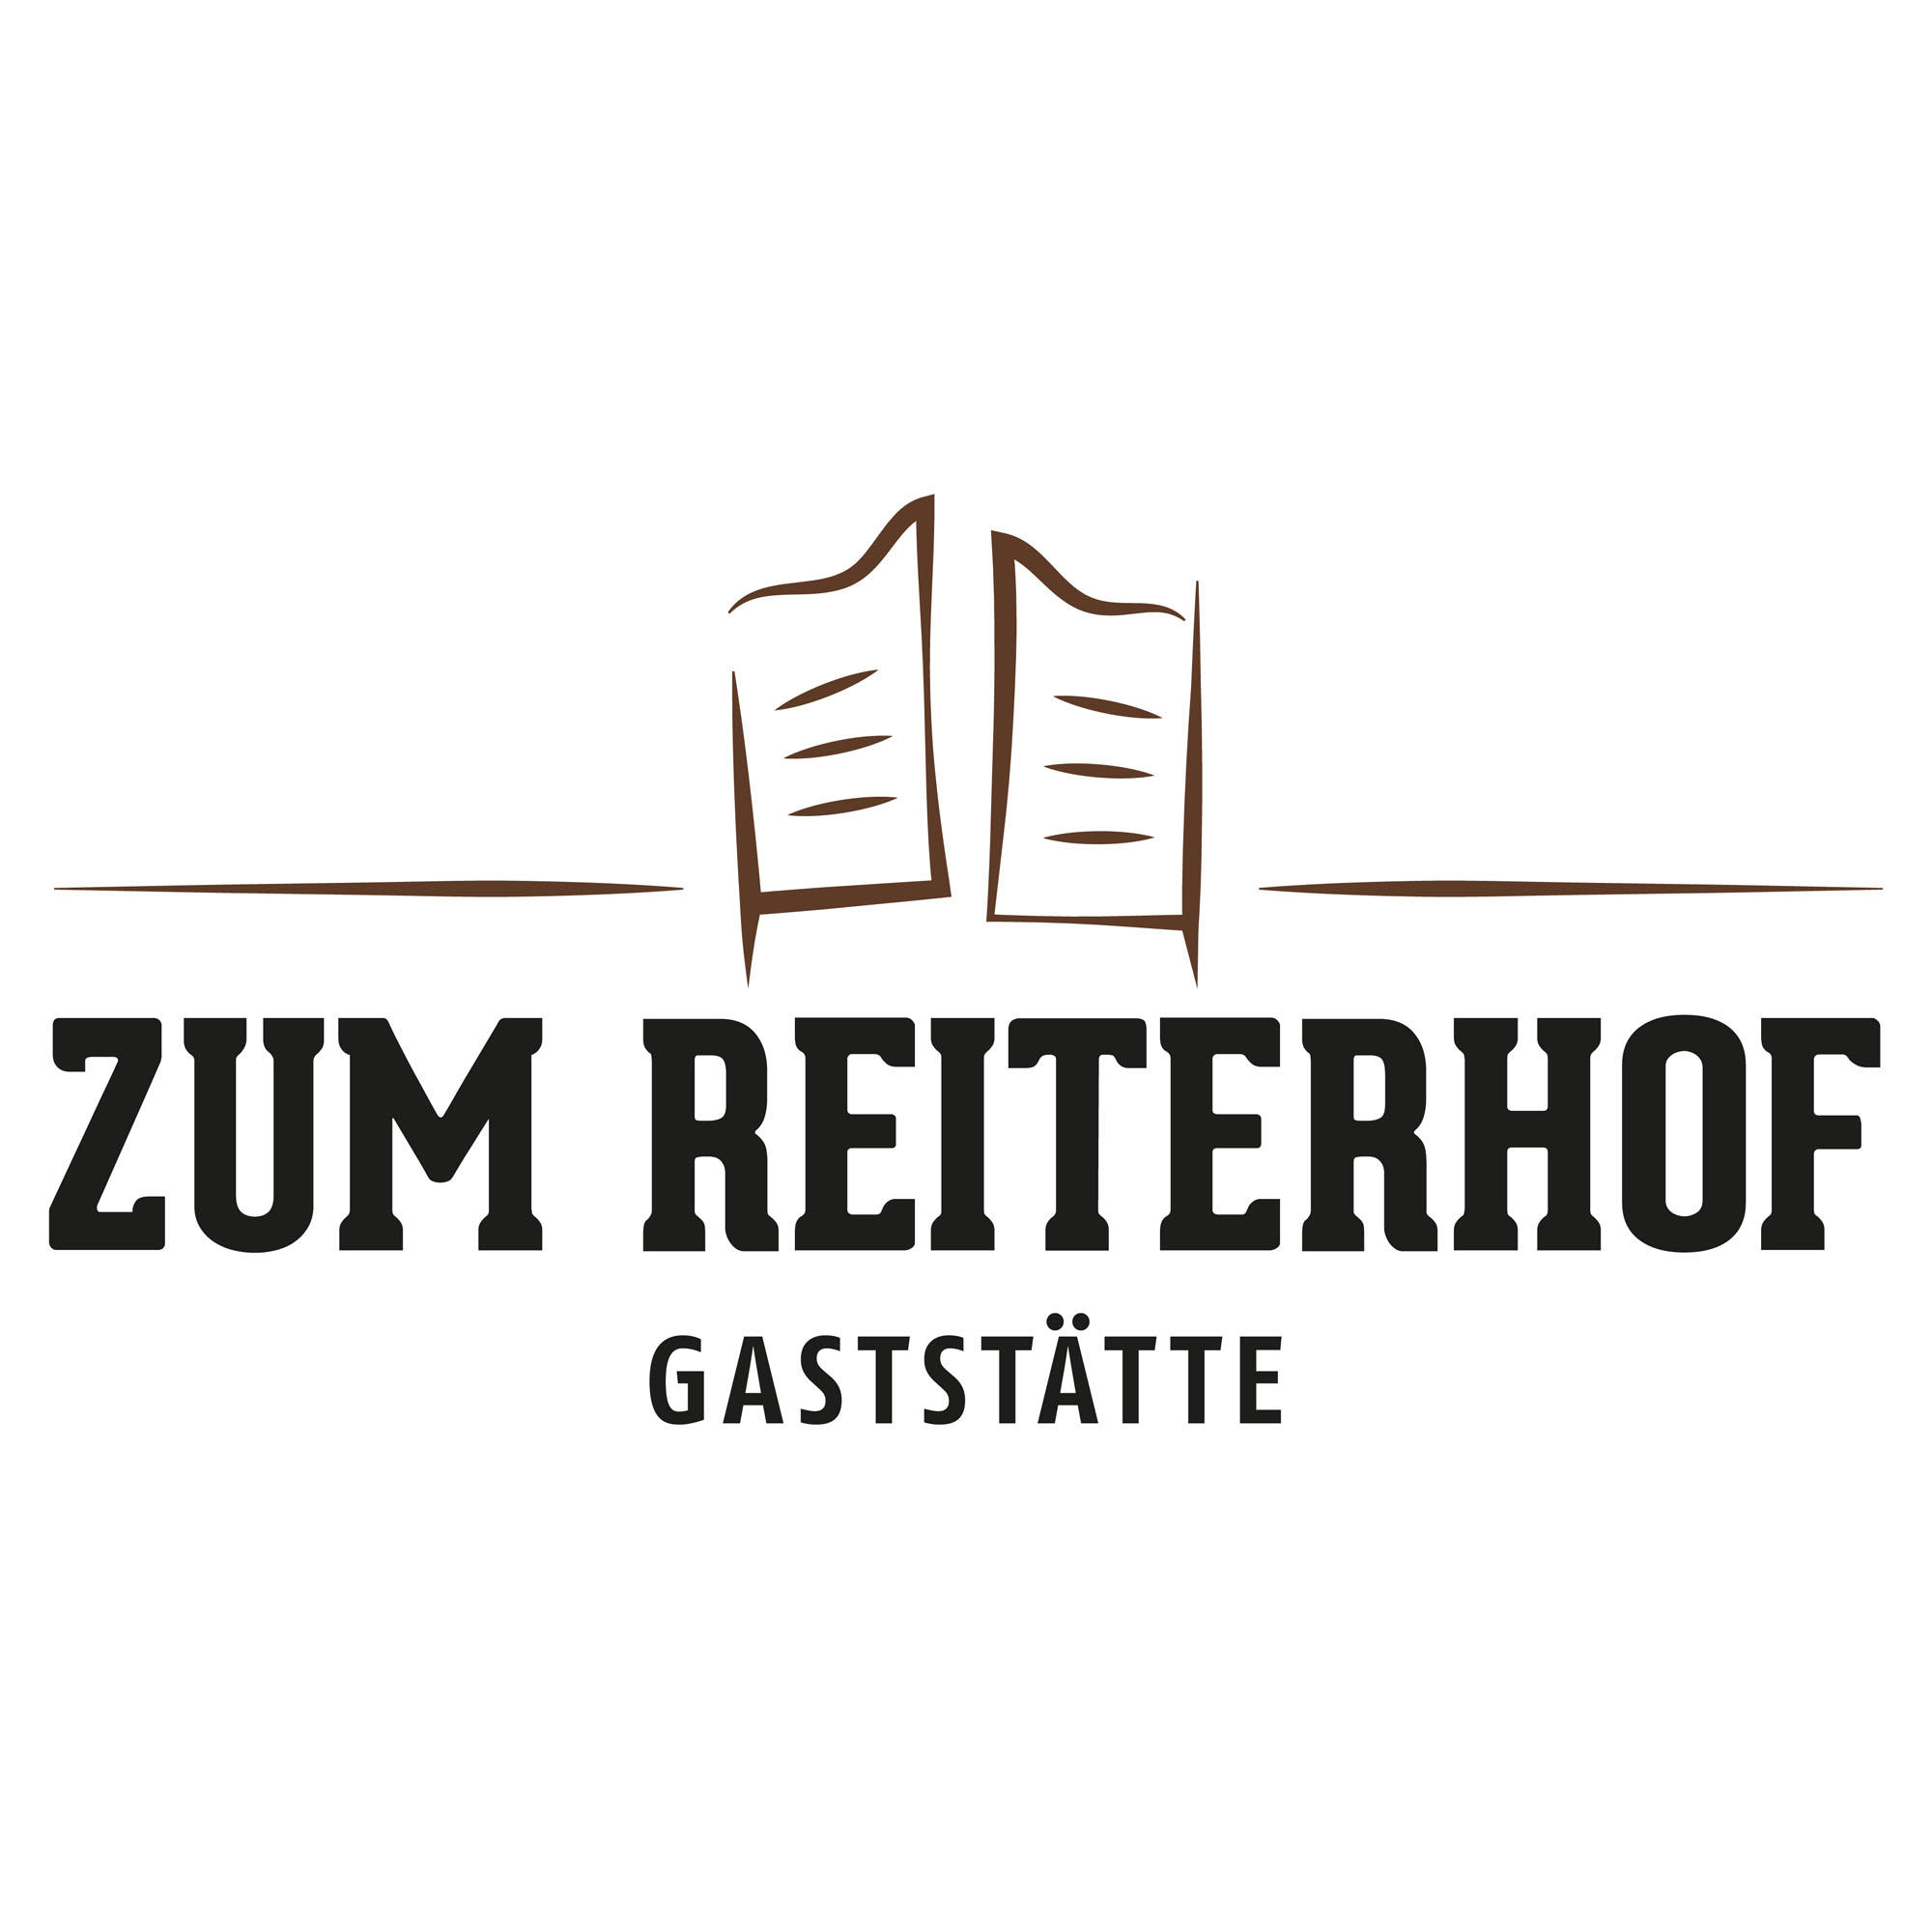 Gaststätte ZUM REITERHOF, Armeestraße 65 in Bamberg